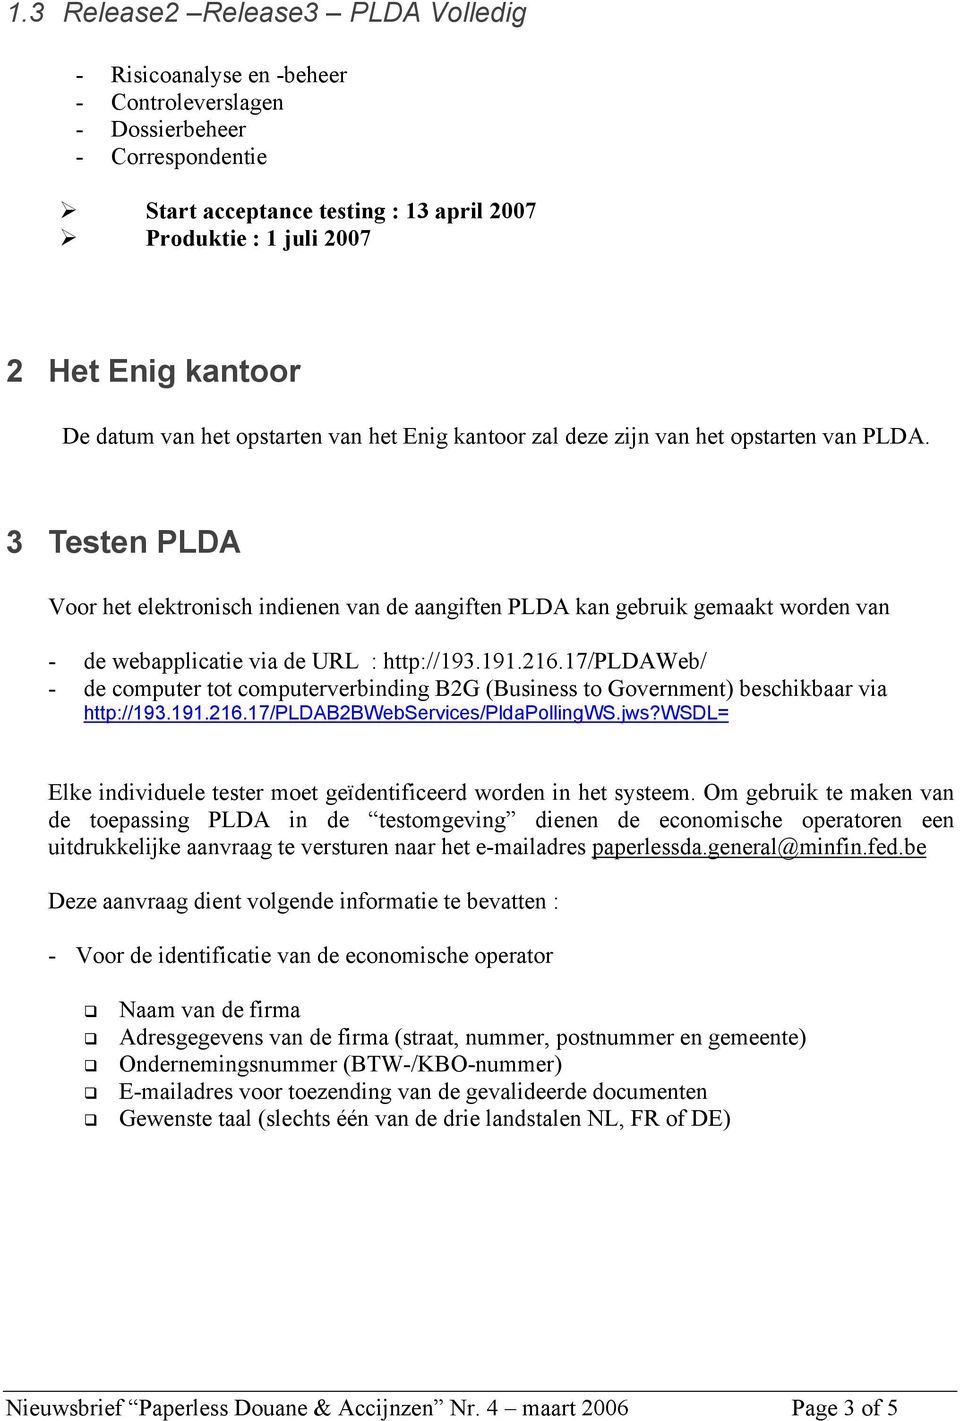 3 Testen PLDA Voor het elektronisch indienen van de aangiften PLDA kan gebruik gemaakt worden van - de webapplicatie via de URL : http://193.191.216.